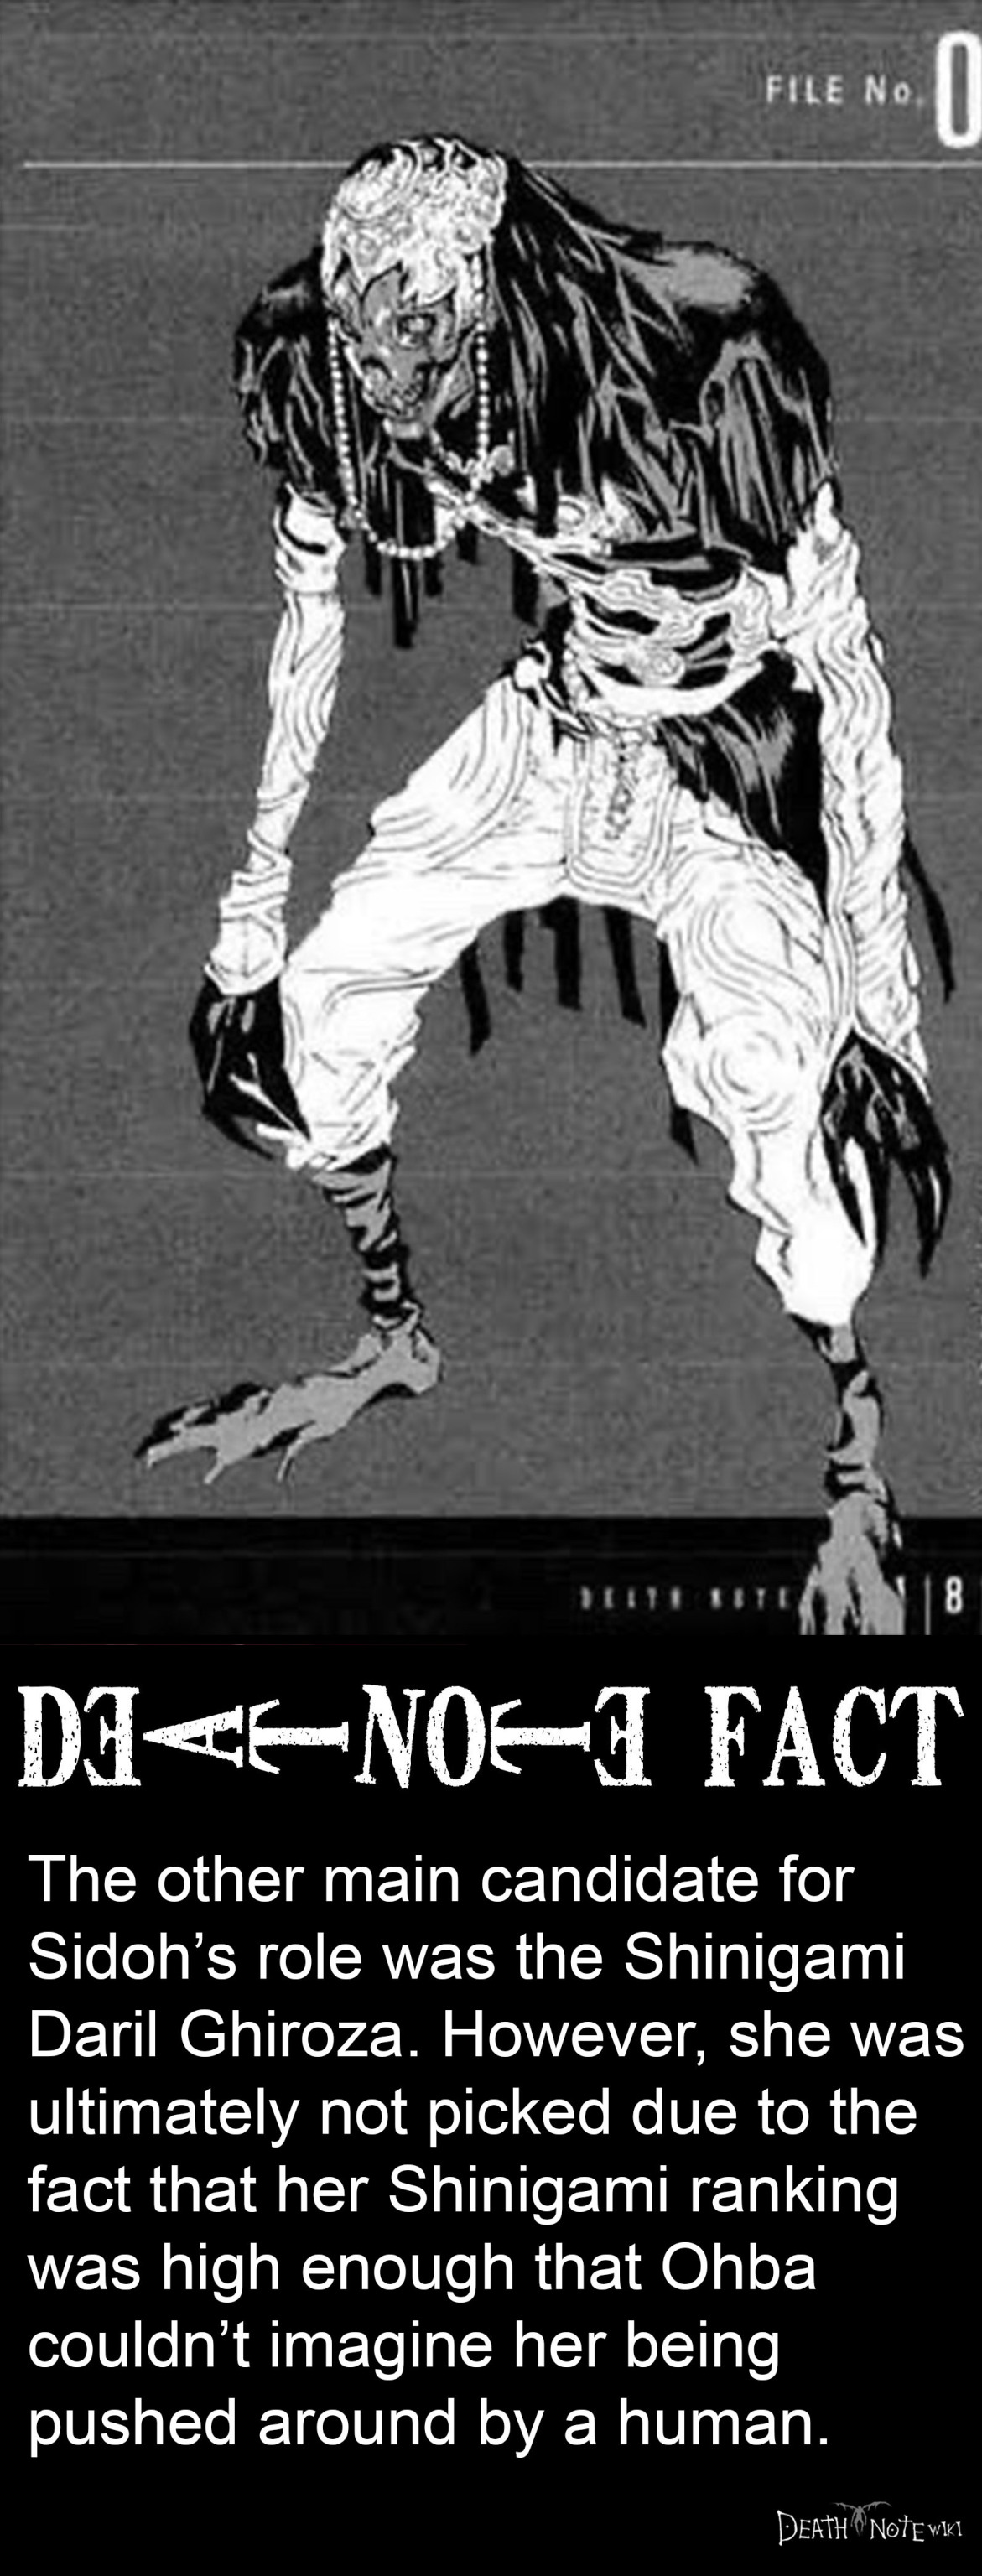 Death Note, Death Note Wiki